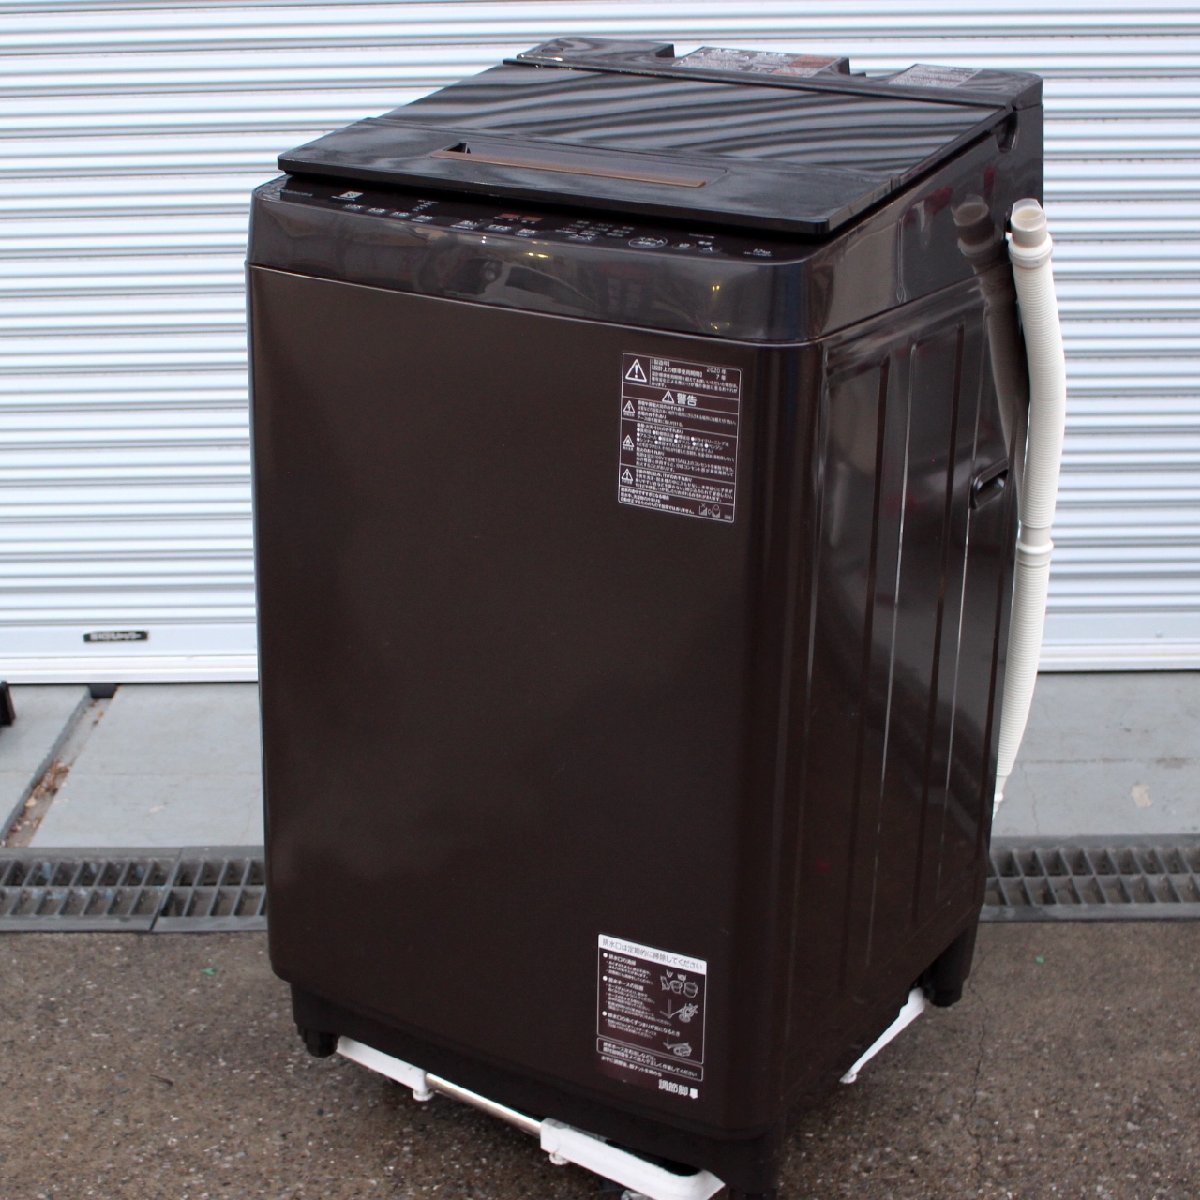 東京都稲城市にて 東芝 全自動洗濯機 AW-12XD8 2020年製 を出張買取させて頂きました。